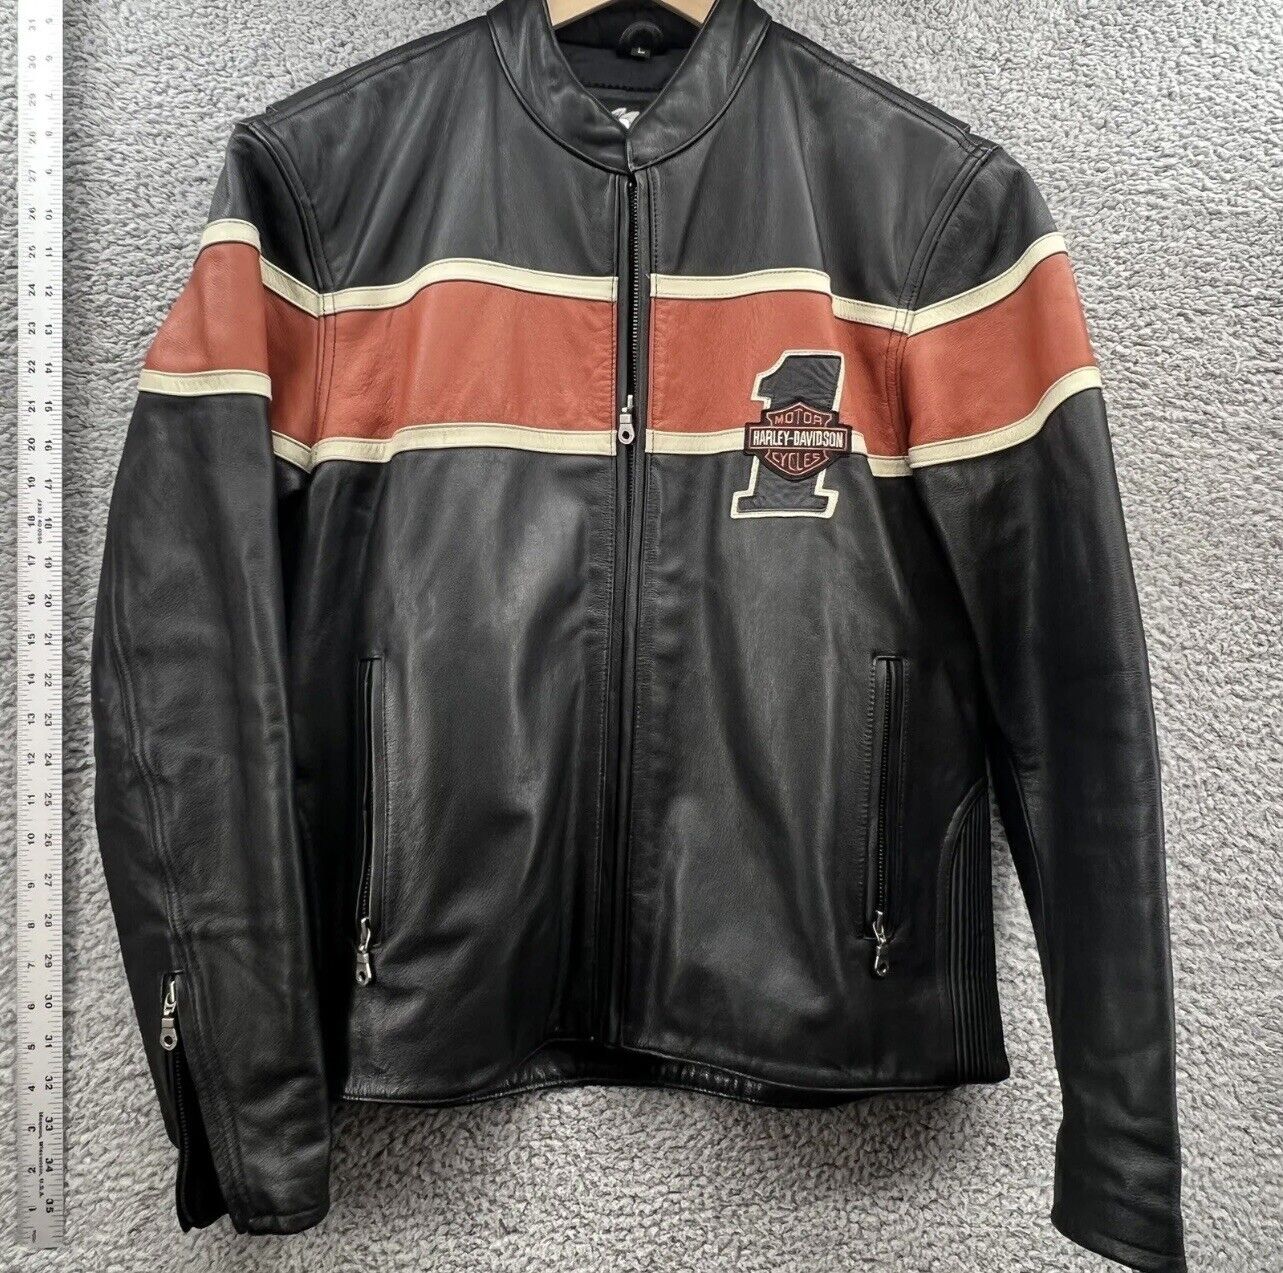 Harley Davidson Race #1 Men's Large Black & Orange Leather Riding coat jacket